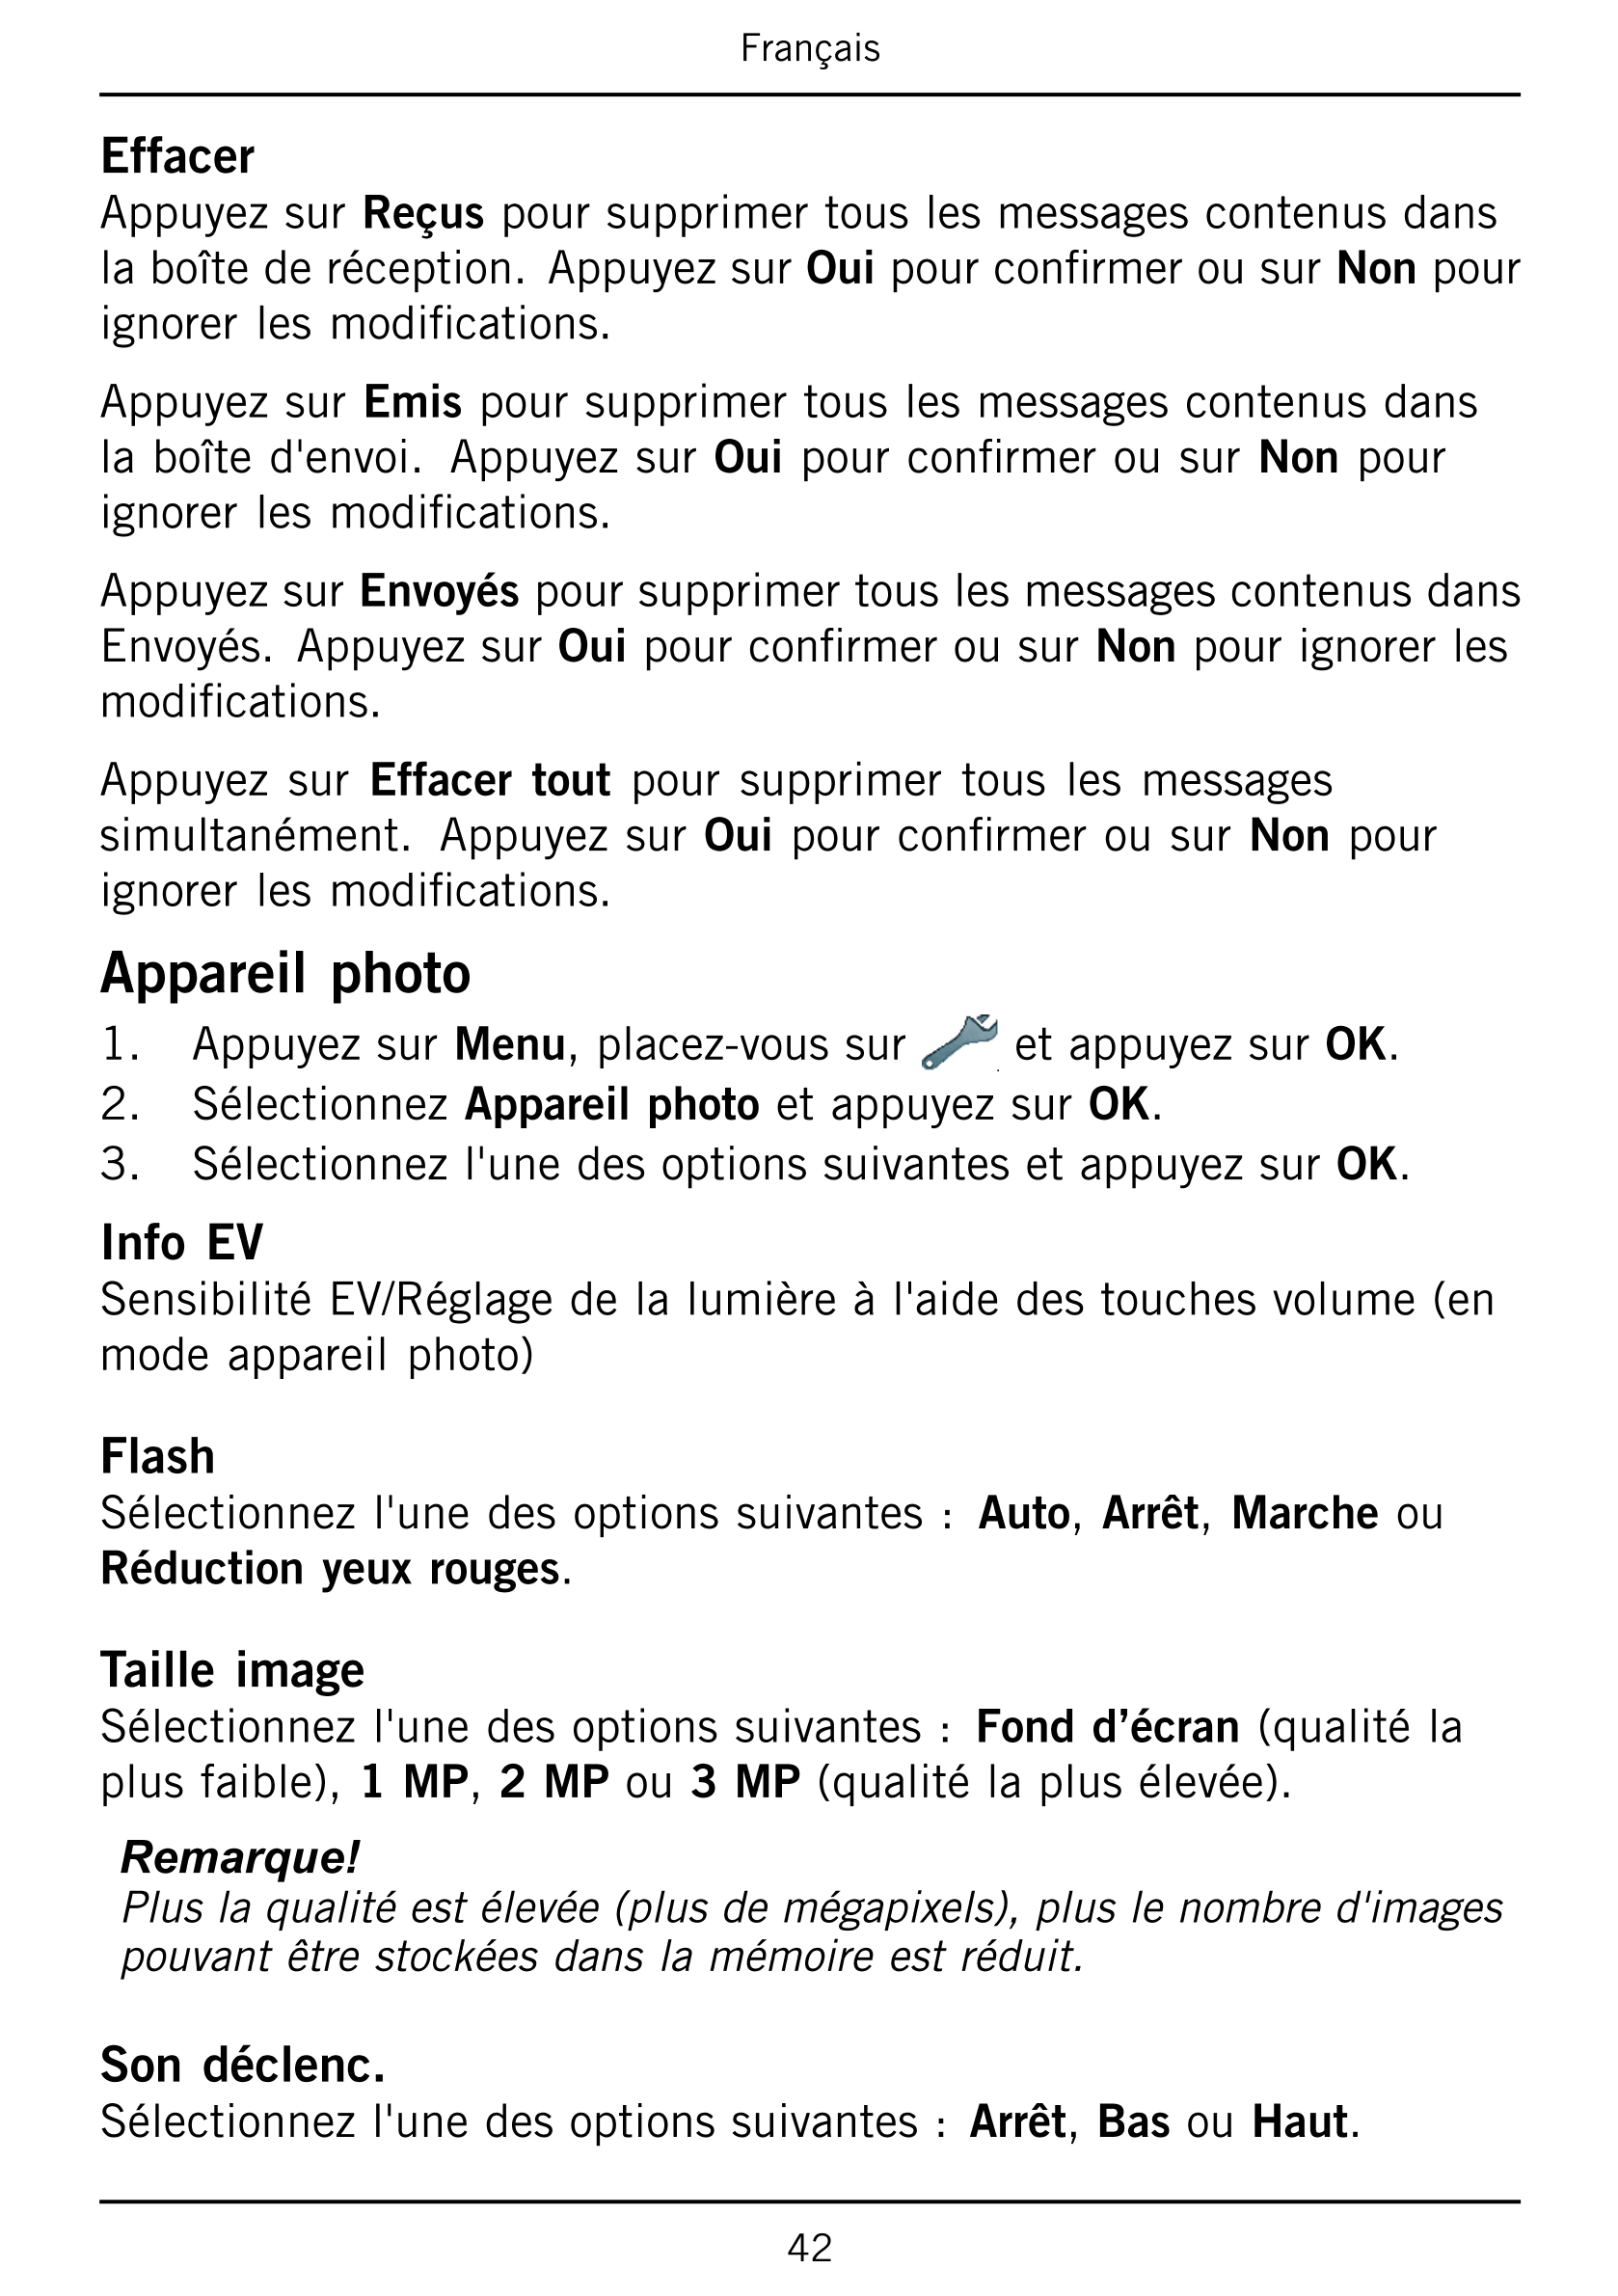 Français
Effacer
Appuyez sur Reçus pour supprimer tous les messages contenus dans
la boîte de réception.  Appuyez sur Oui pour c